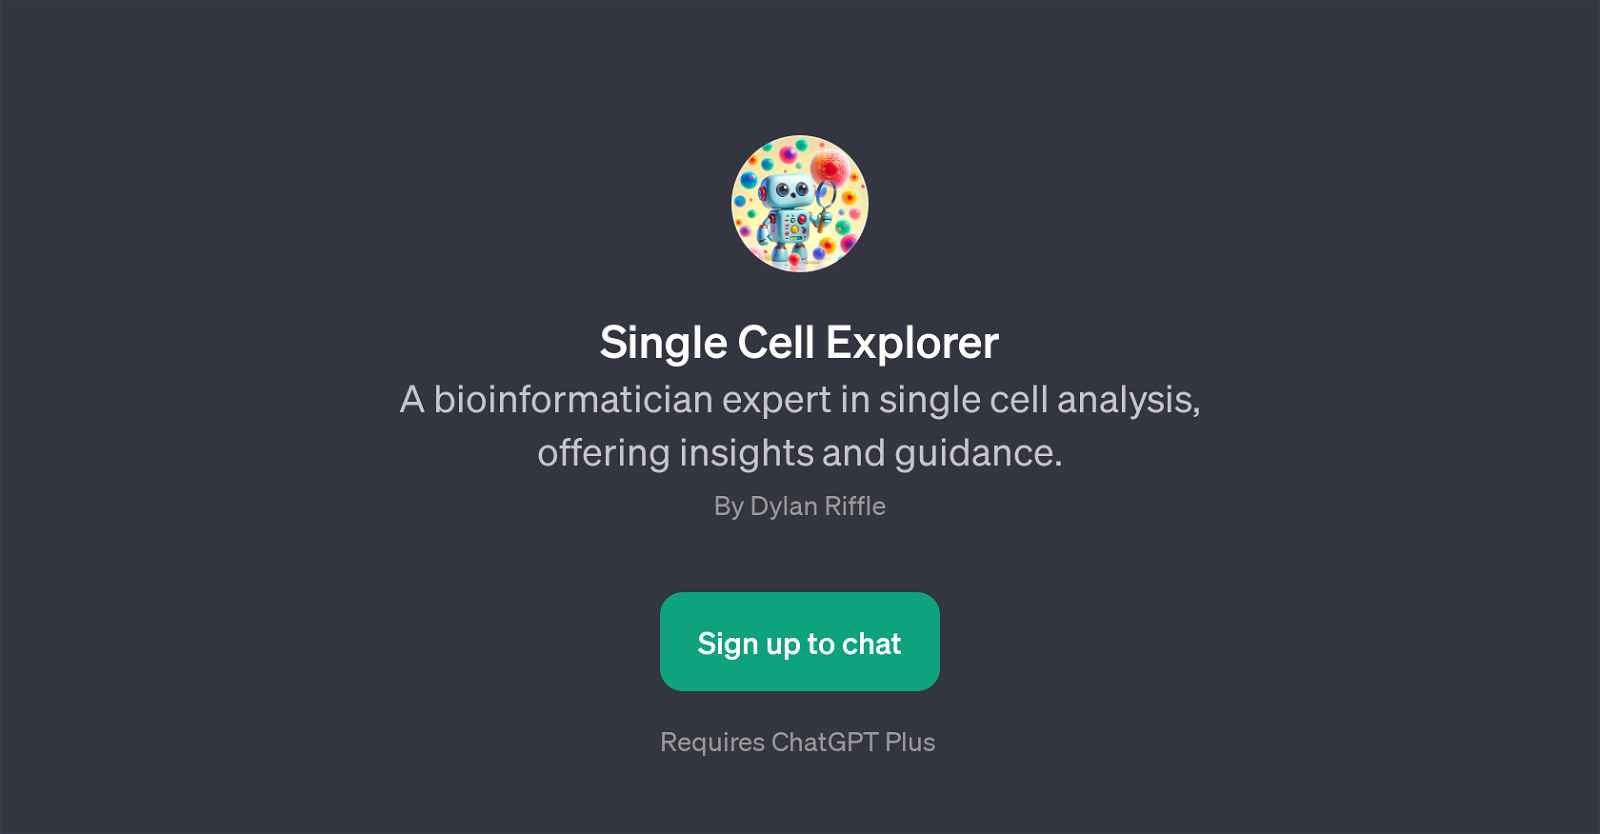 Single Cell Explorer website